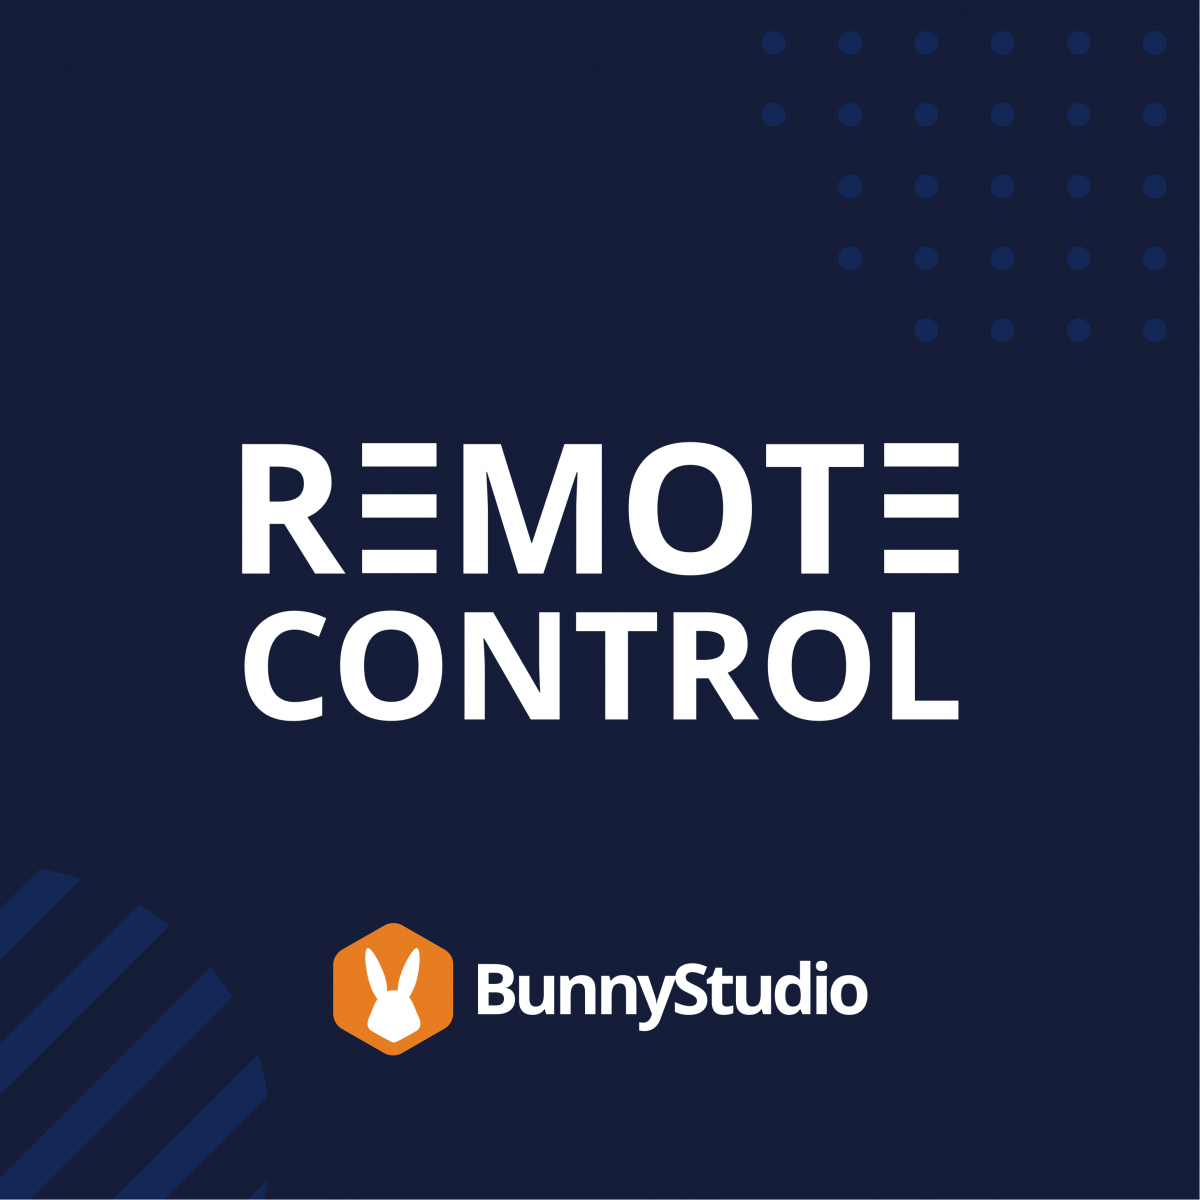 Remote Control Podcast Cover, Bunny Studio